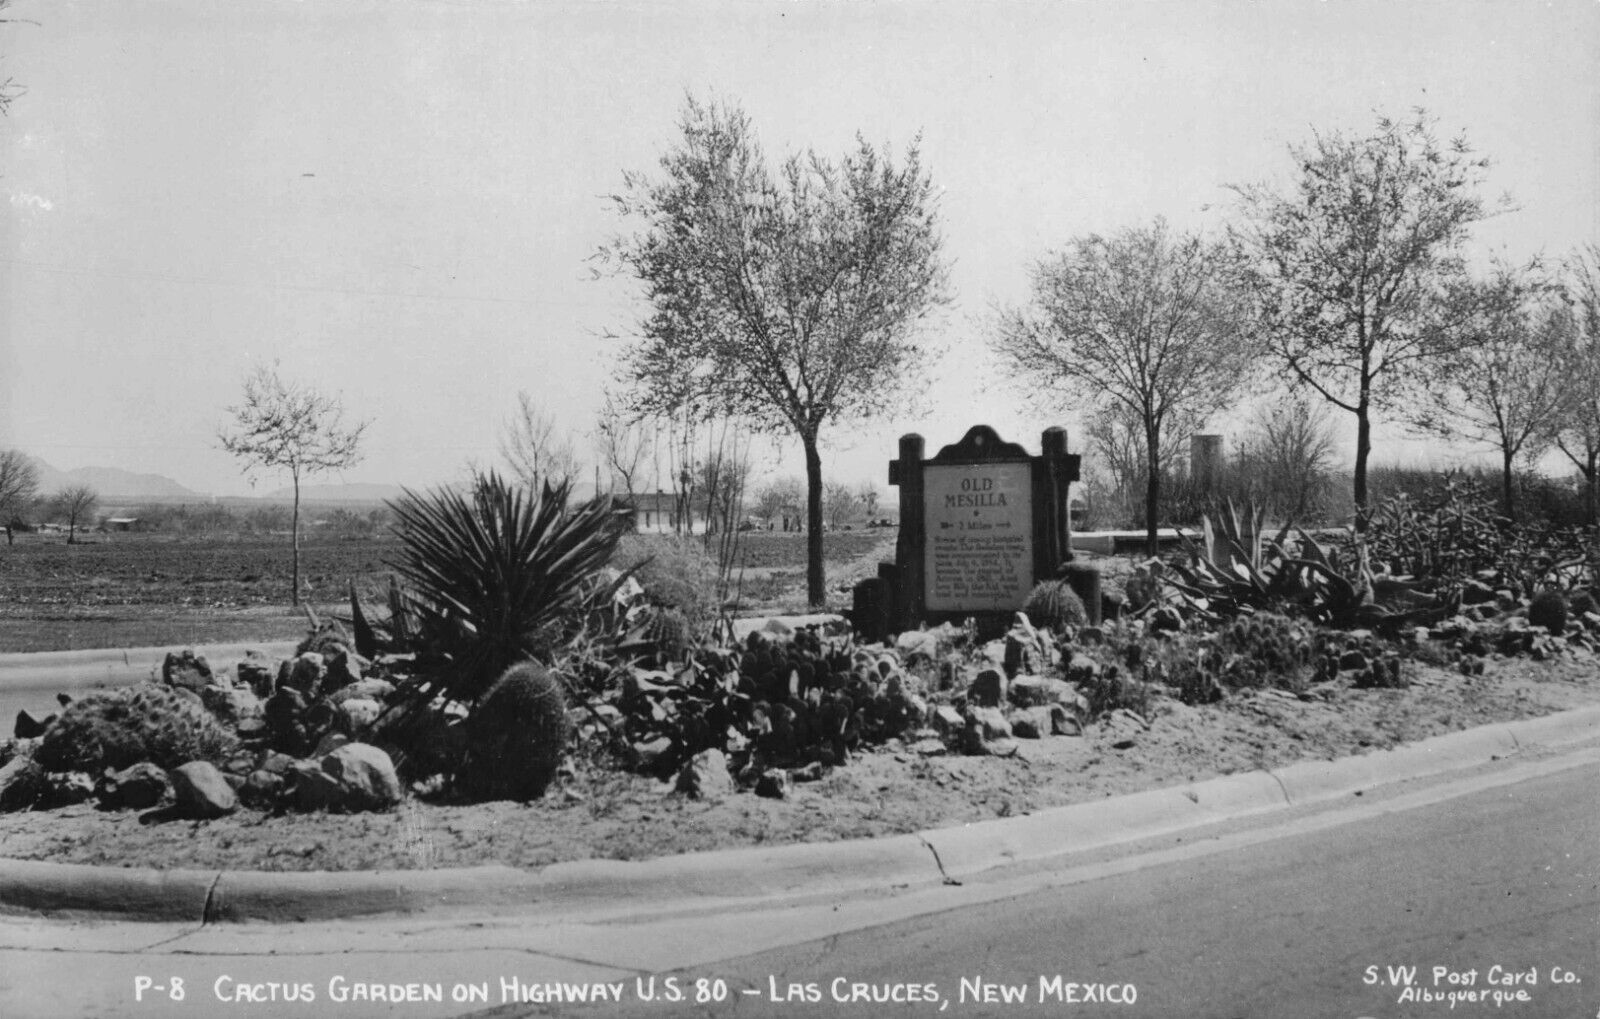 RPPC Las Cruces New Mexico Cactus Garden Old Mesilla Sign Real Photo Postcard